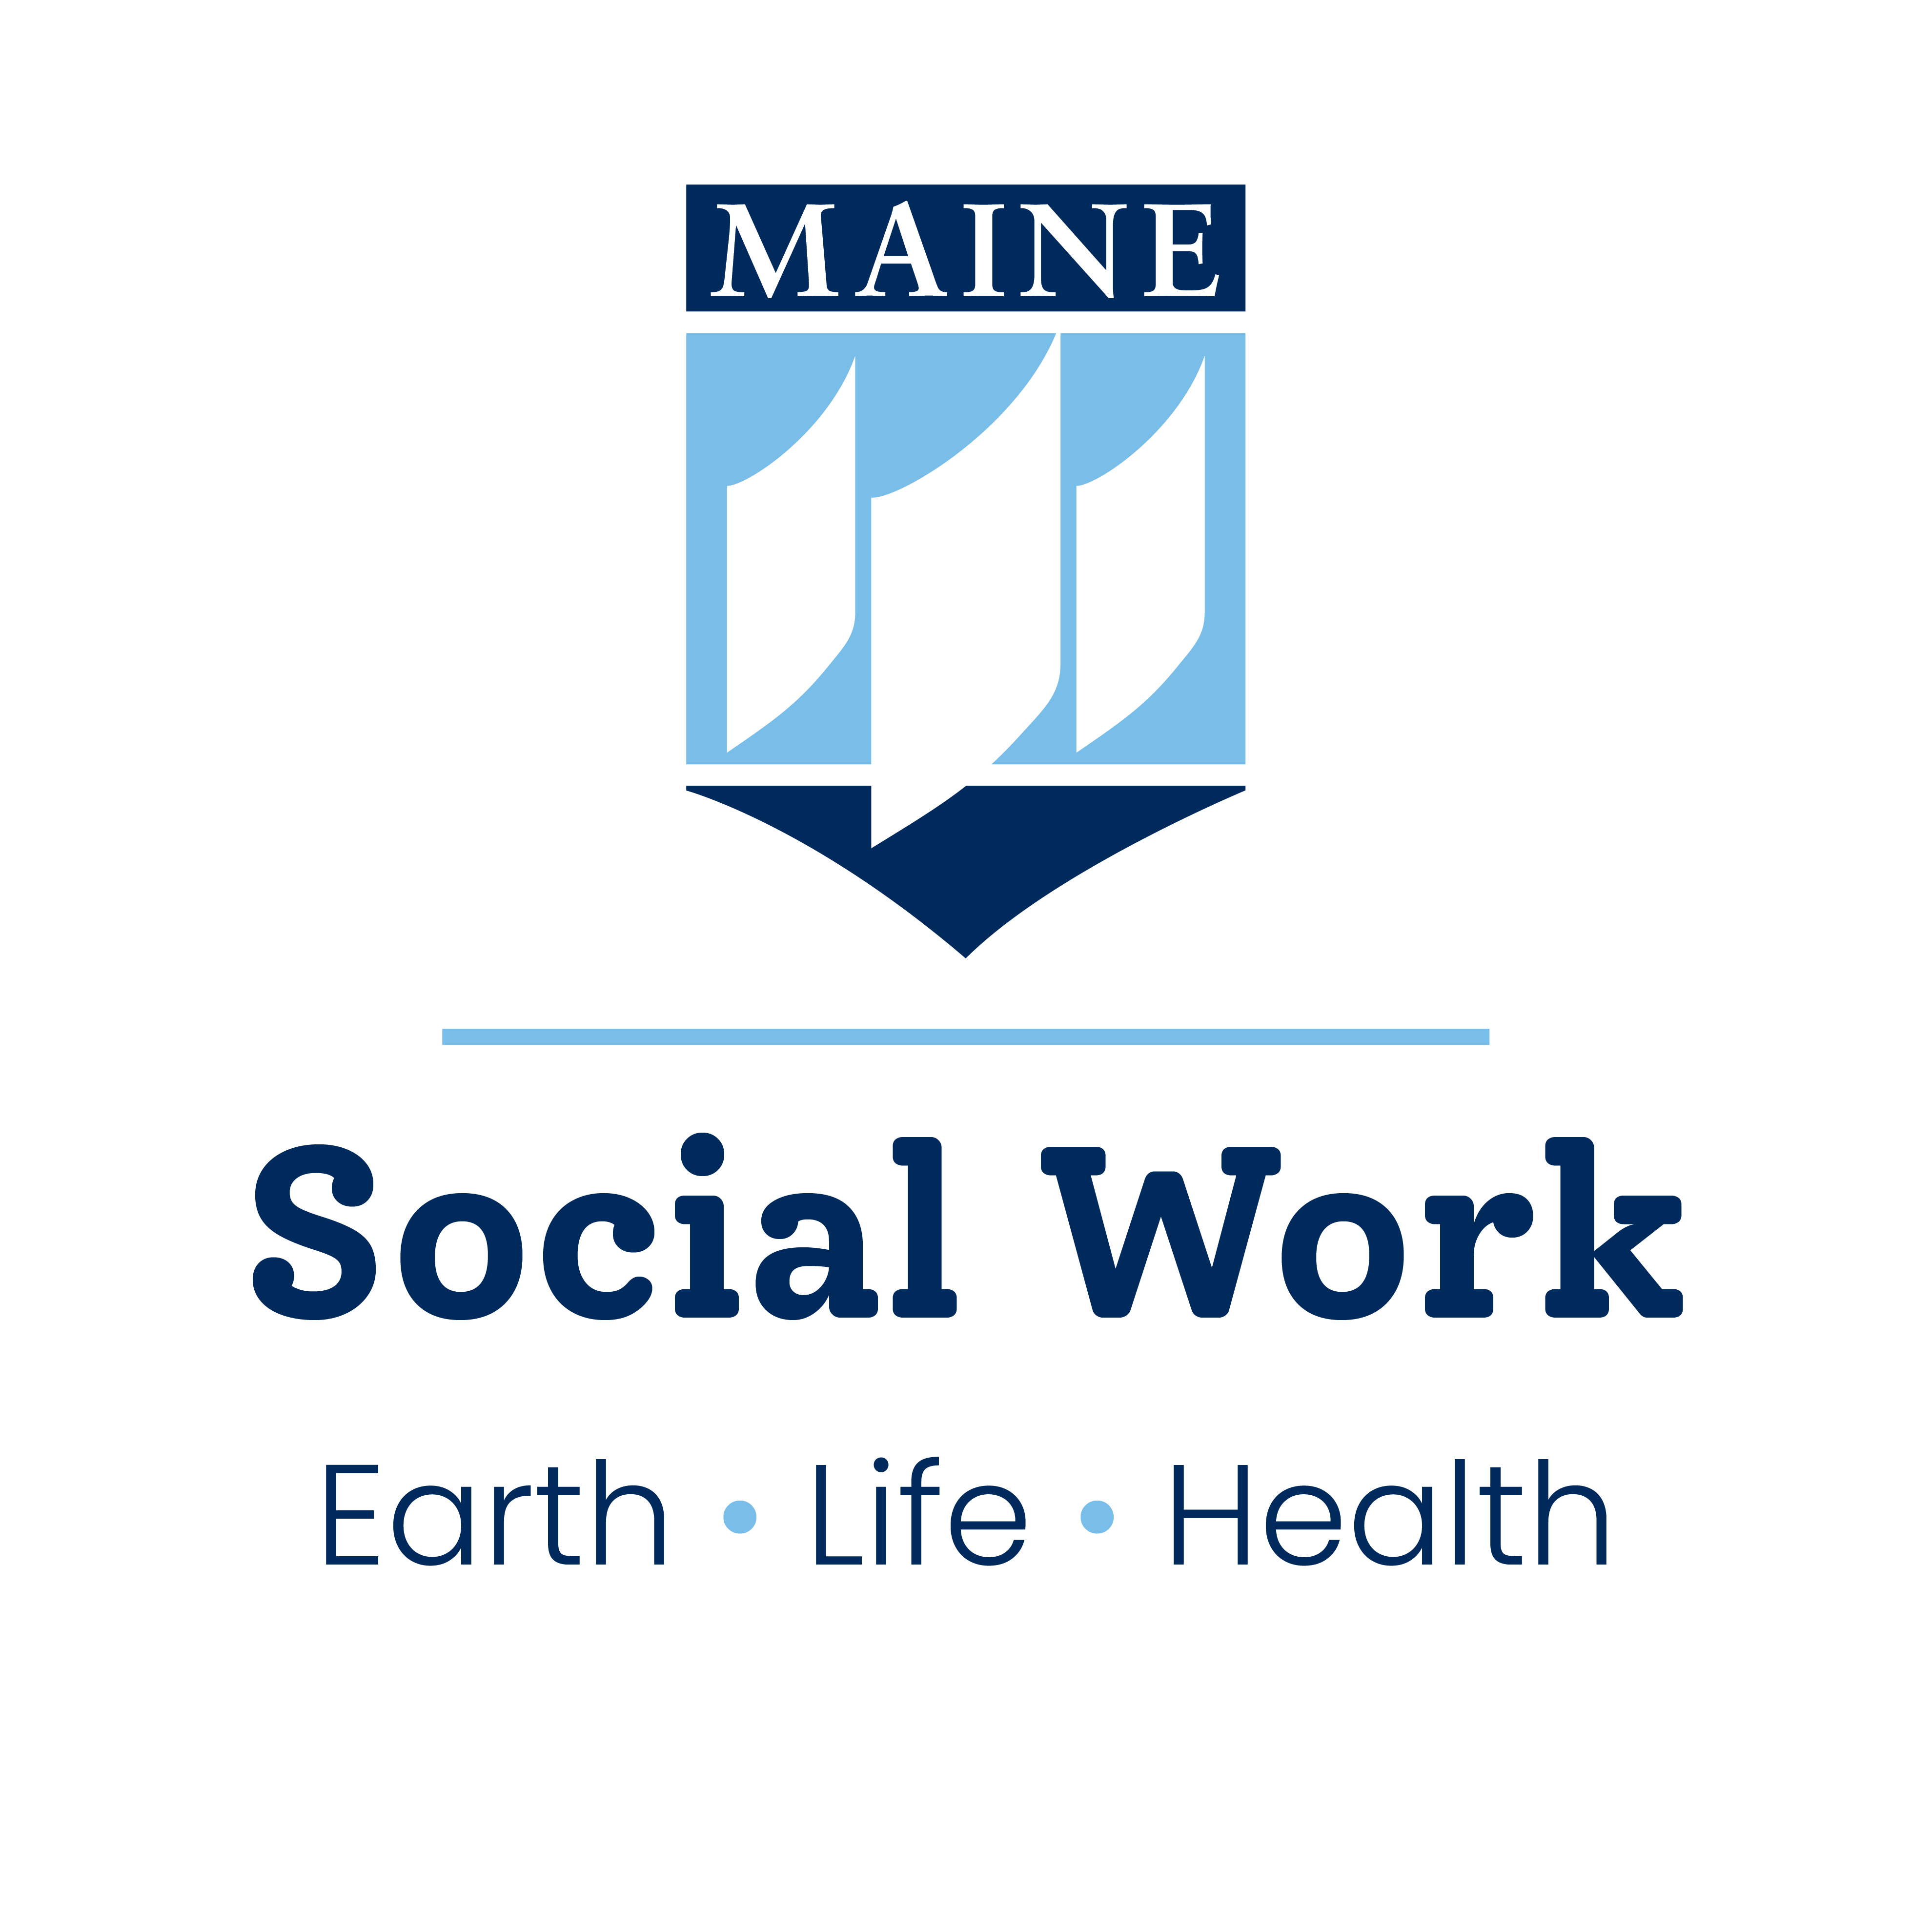 UMaine crest, social work, earth • life • health